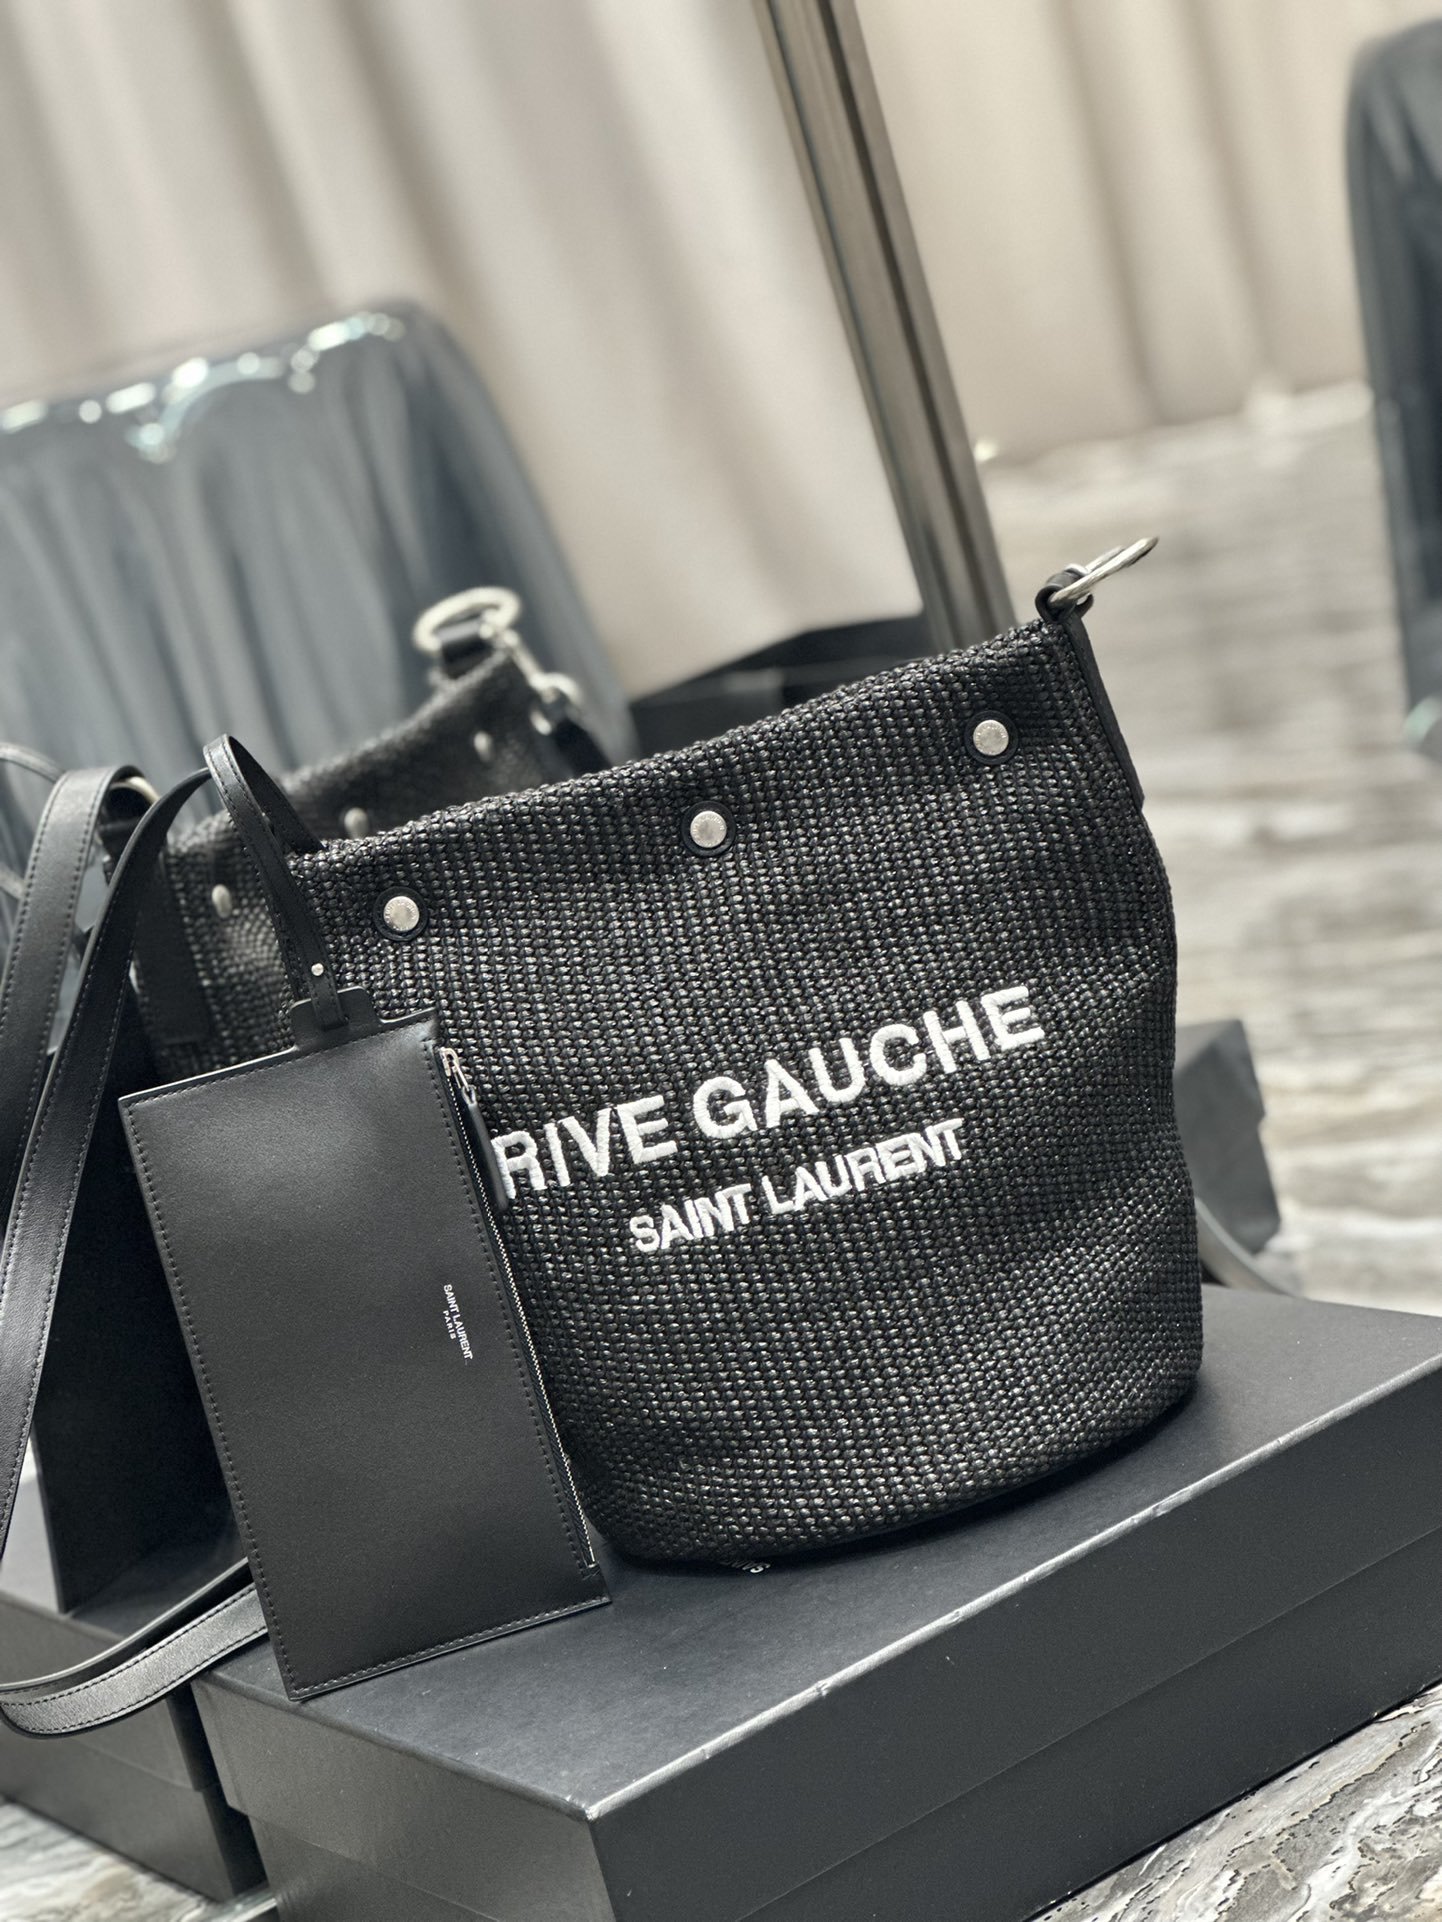 A bag RIVE GAUCHE 30 cm фото 2